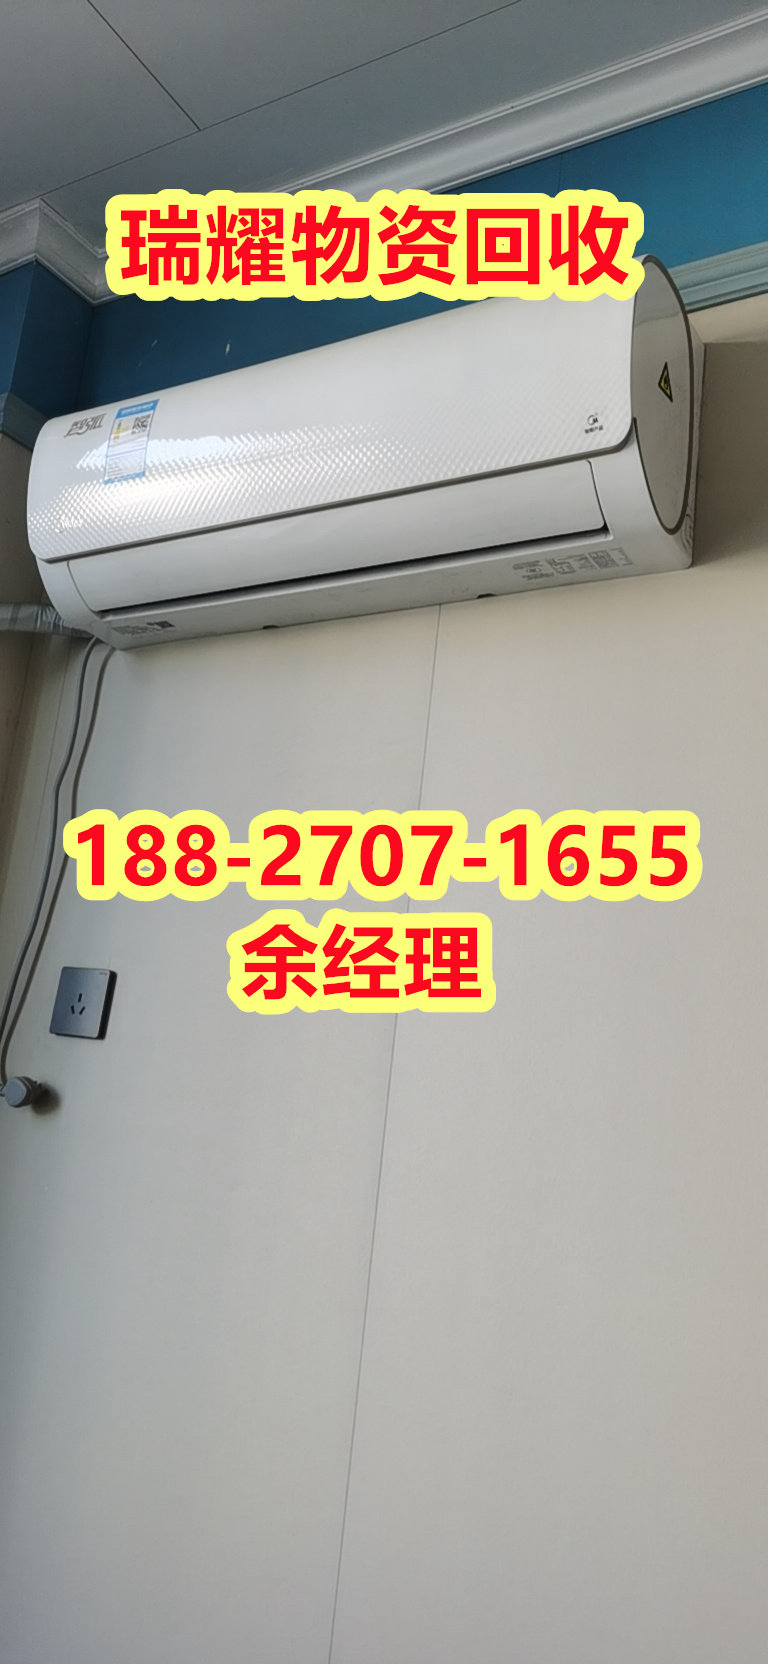 九江市空调设备回收回收热线